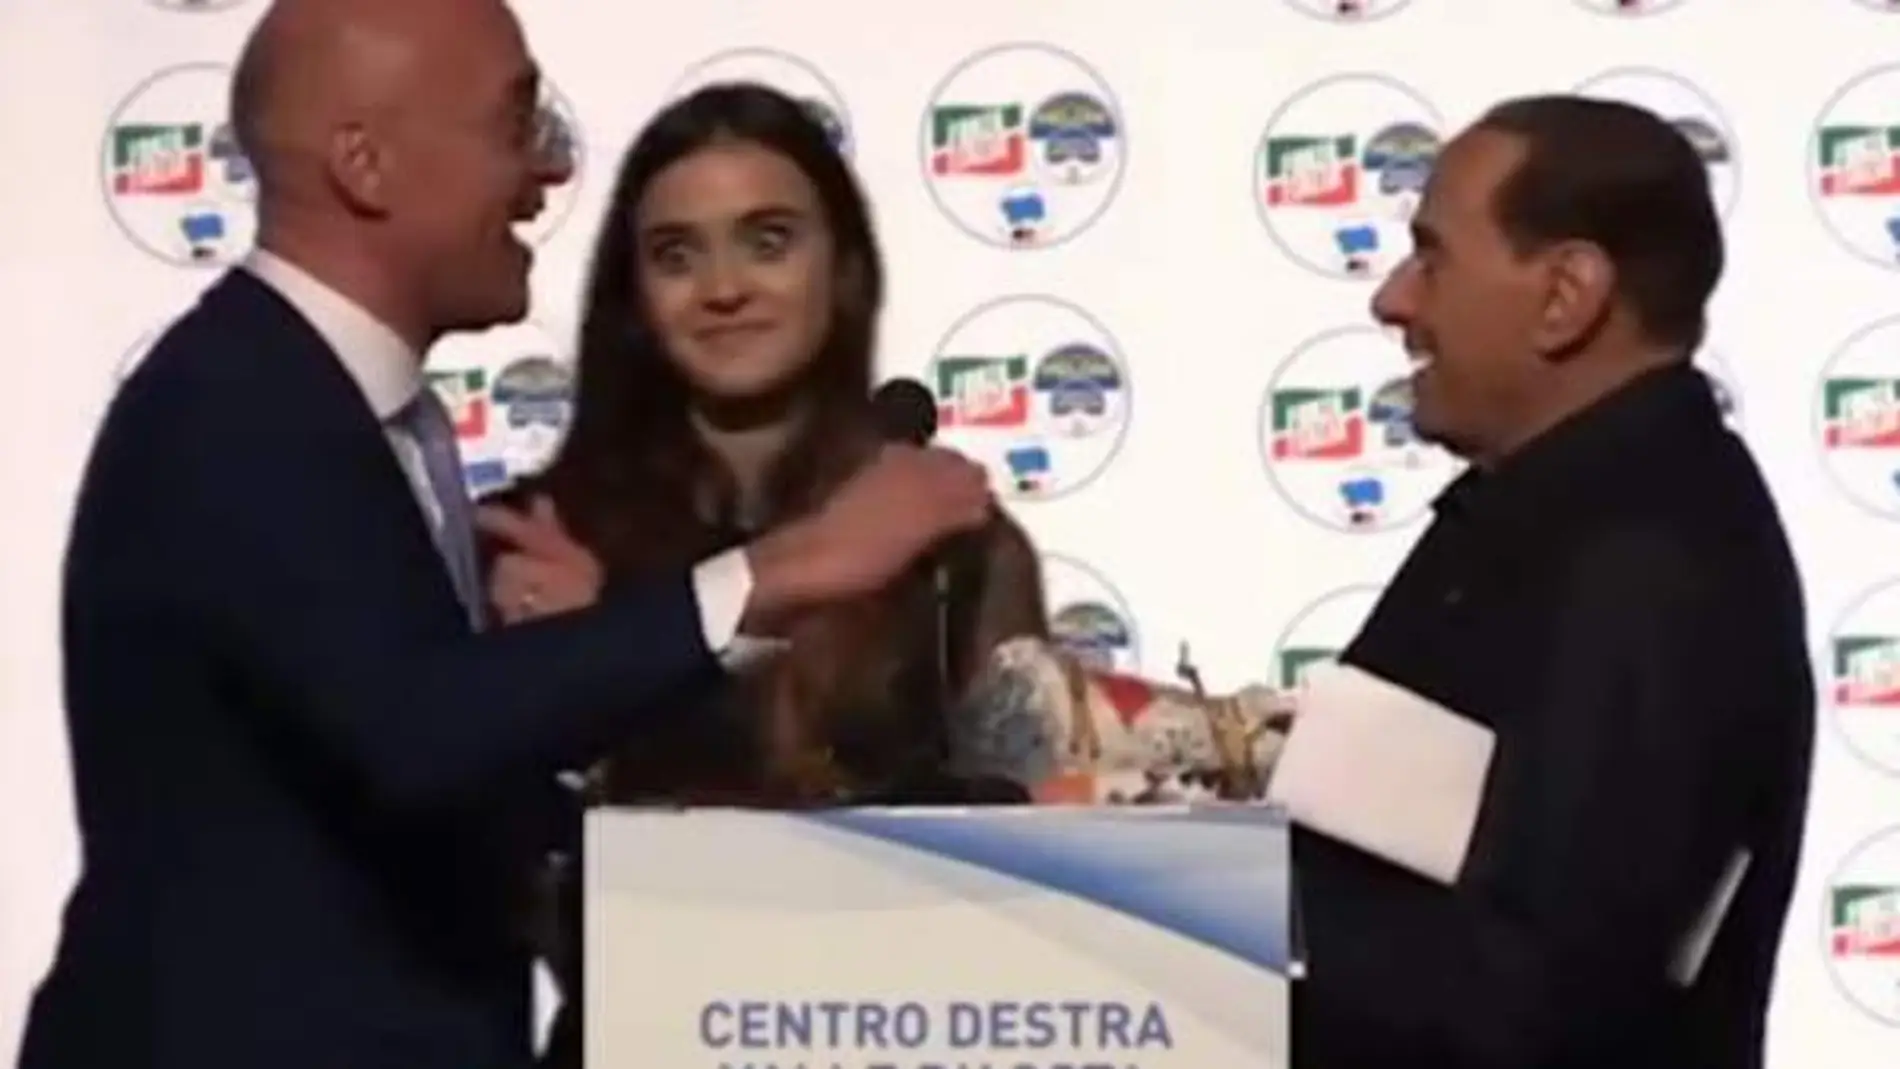 La reacción de la joven al oír el comentario que le dirige Berlusconi en un acto electoral